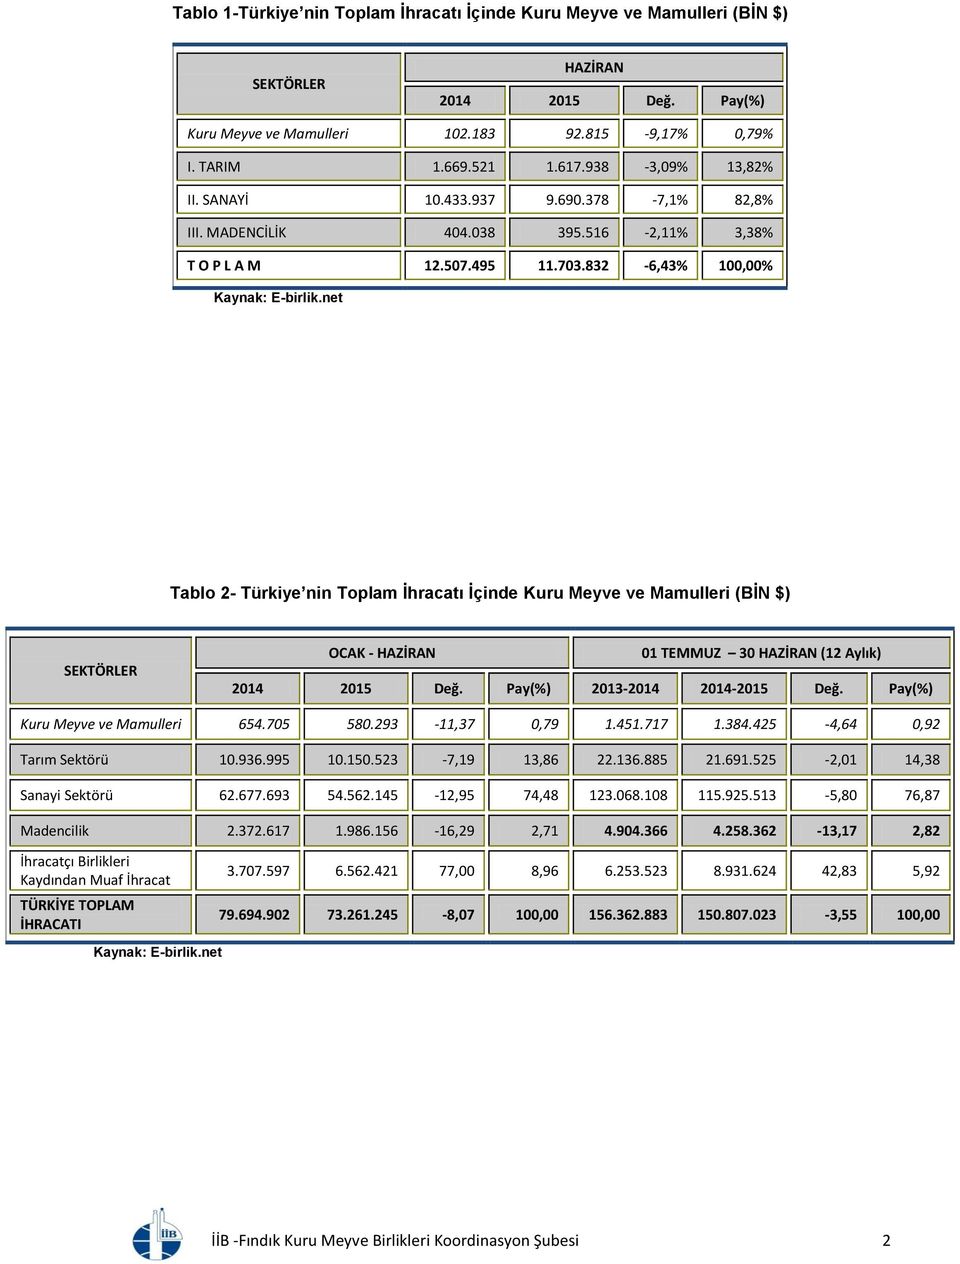 832-6,43% 100,00% Tablo 2- Türkiye nin Toplam İhracatı İçinde Kuru Meyve ve Mamulleri (BİN $) SEKTÖRLER OCAK - HAZİRAN 2014 2015 Değ. Pay(%) 2013-2014 2014-2015 Değ.